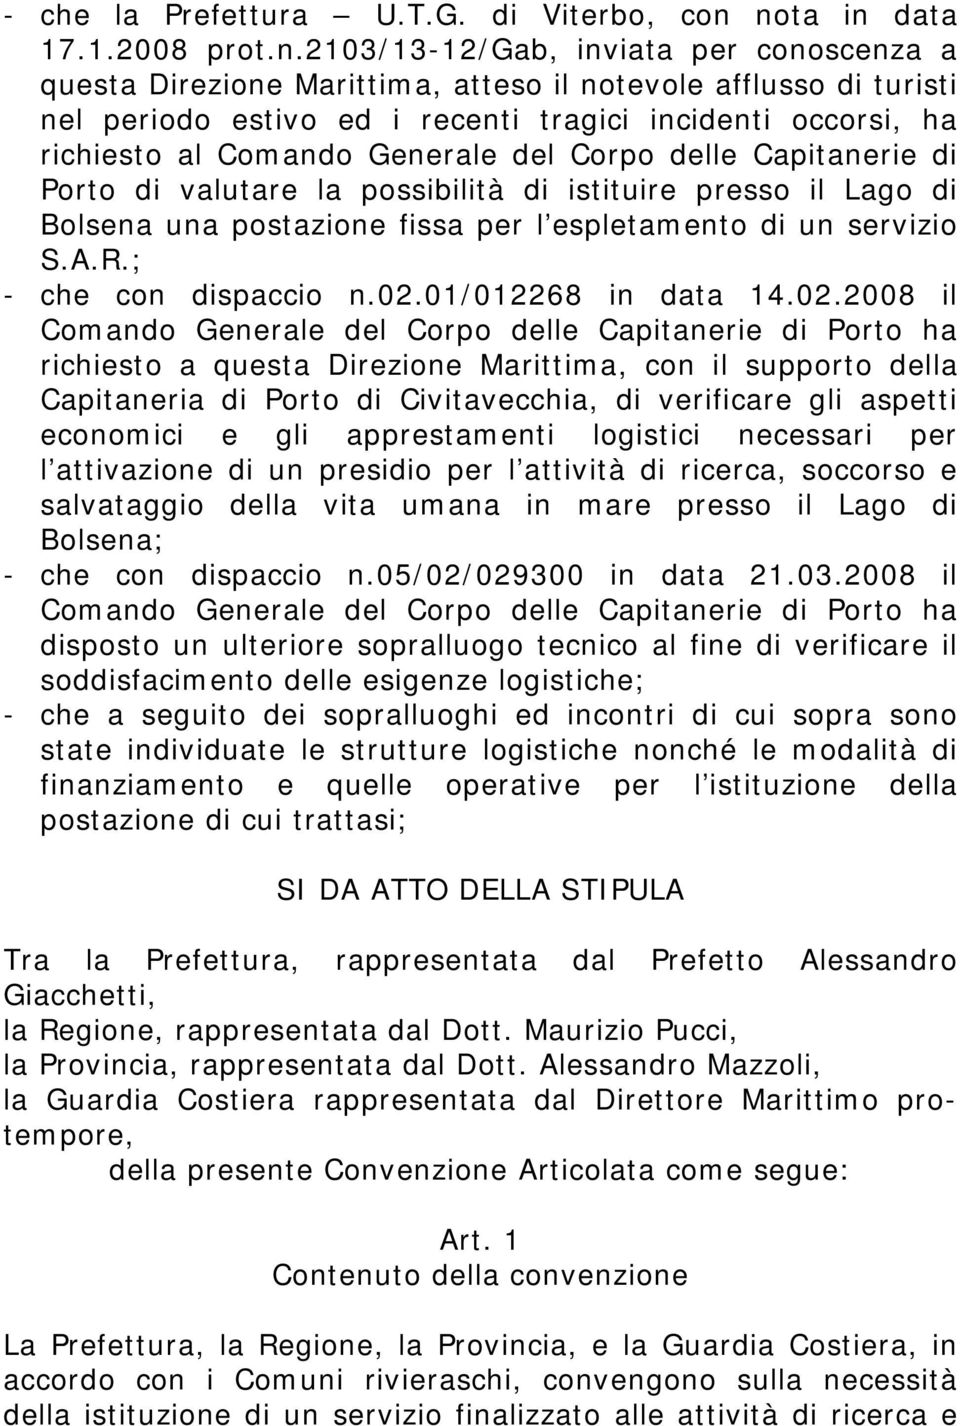 richiesto al Comando Generale del Corpo delle Capitanerie di Porto di valutare la possibilità di istituire presso il Lago di Bolsena una postazione fissa per l espletamento di un servizio S.A.R.